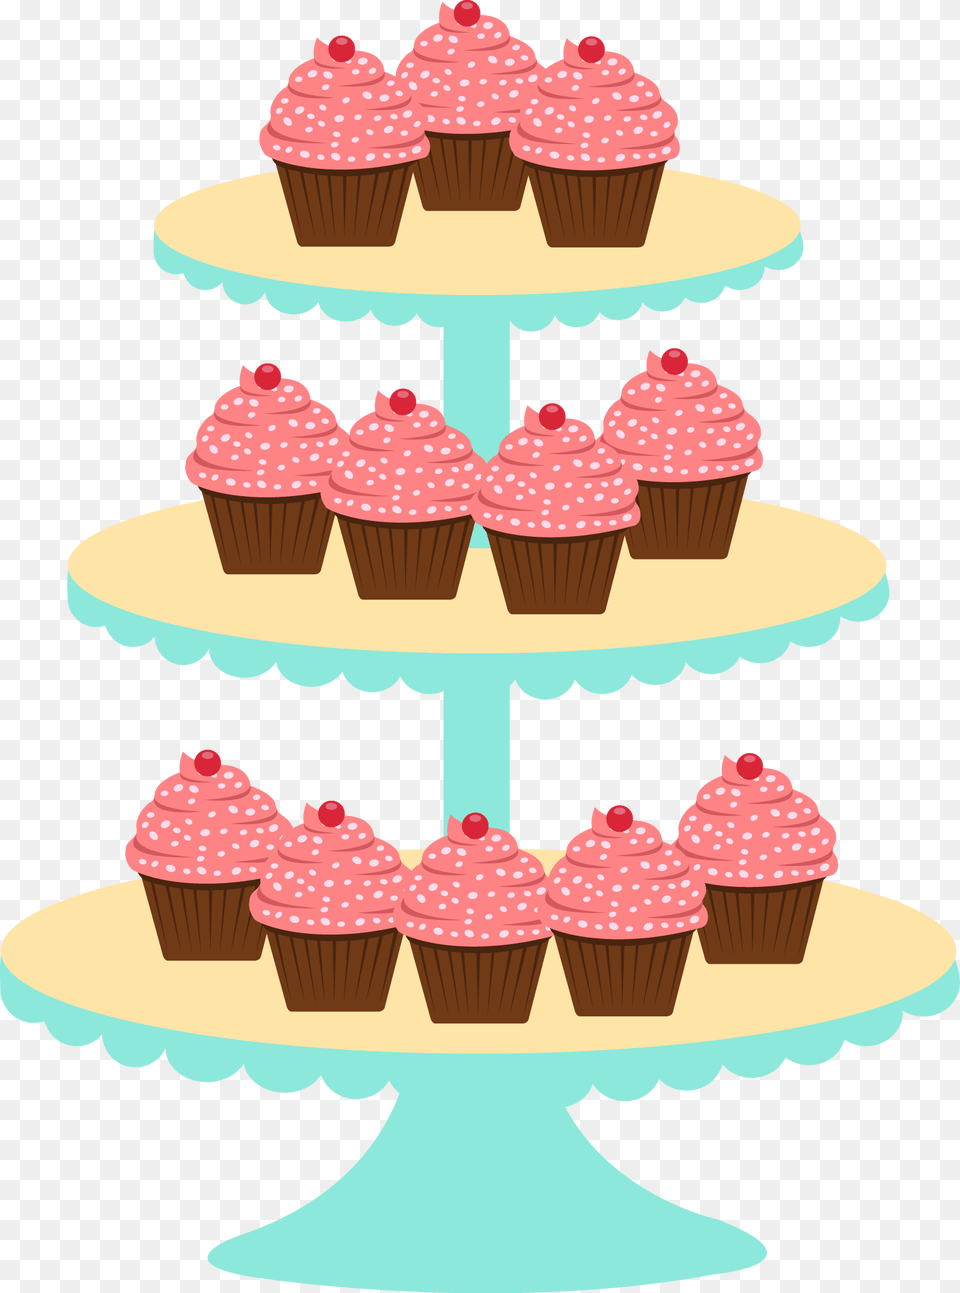 Imagem De Confeitaria, Birthday Cake, Cake, Cream, Cupcake Free Png